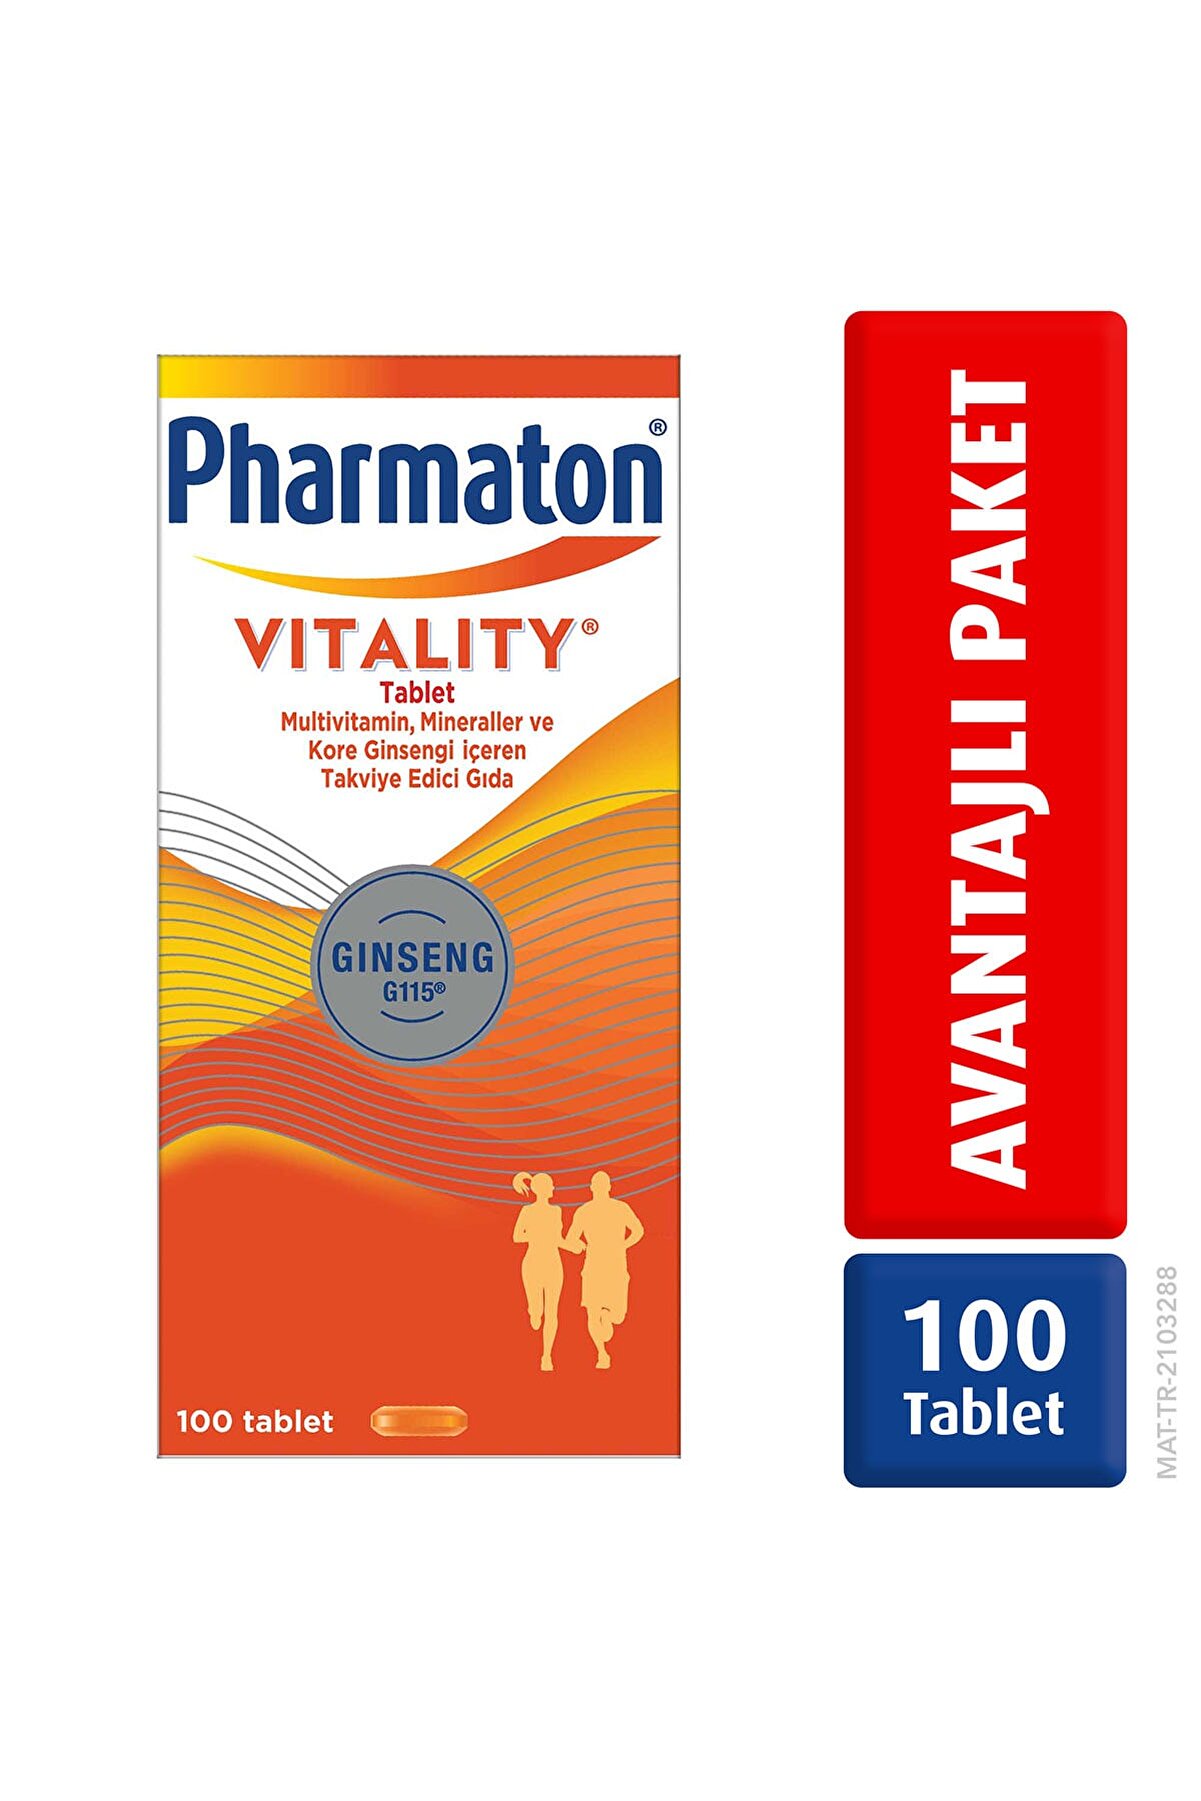 Pharmaton Vitality 100 Tablet - Ginseng G115, Multivitamin Ve Mineraller